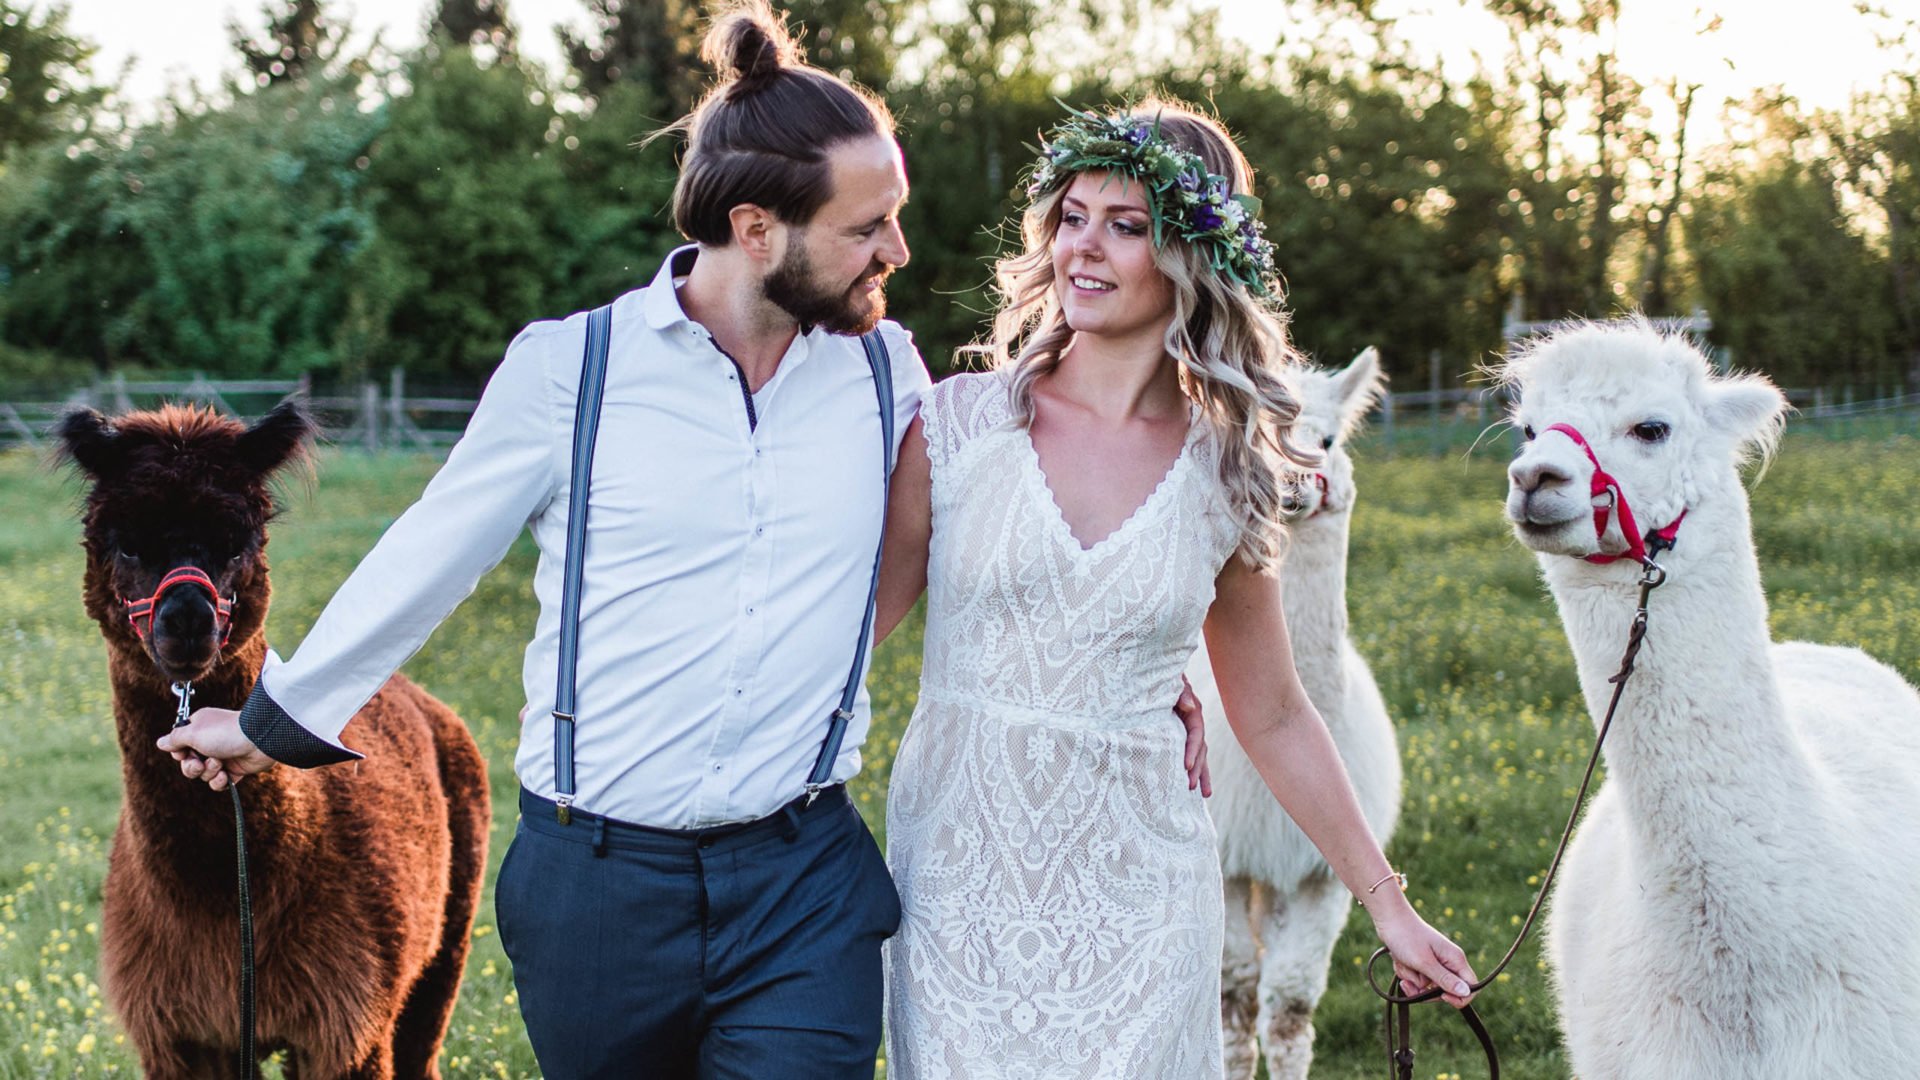 Brautkleid mit Spitze im Paisleymuster und Alpakas zur Hochzeit